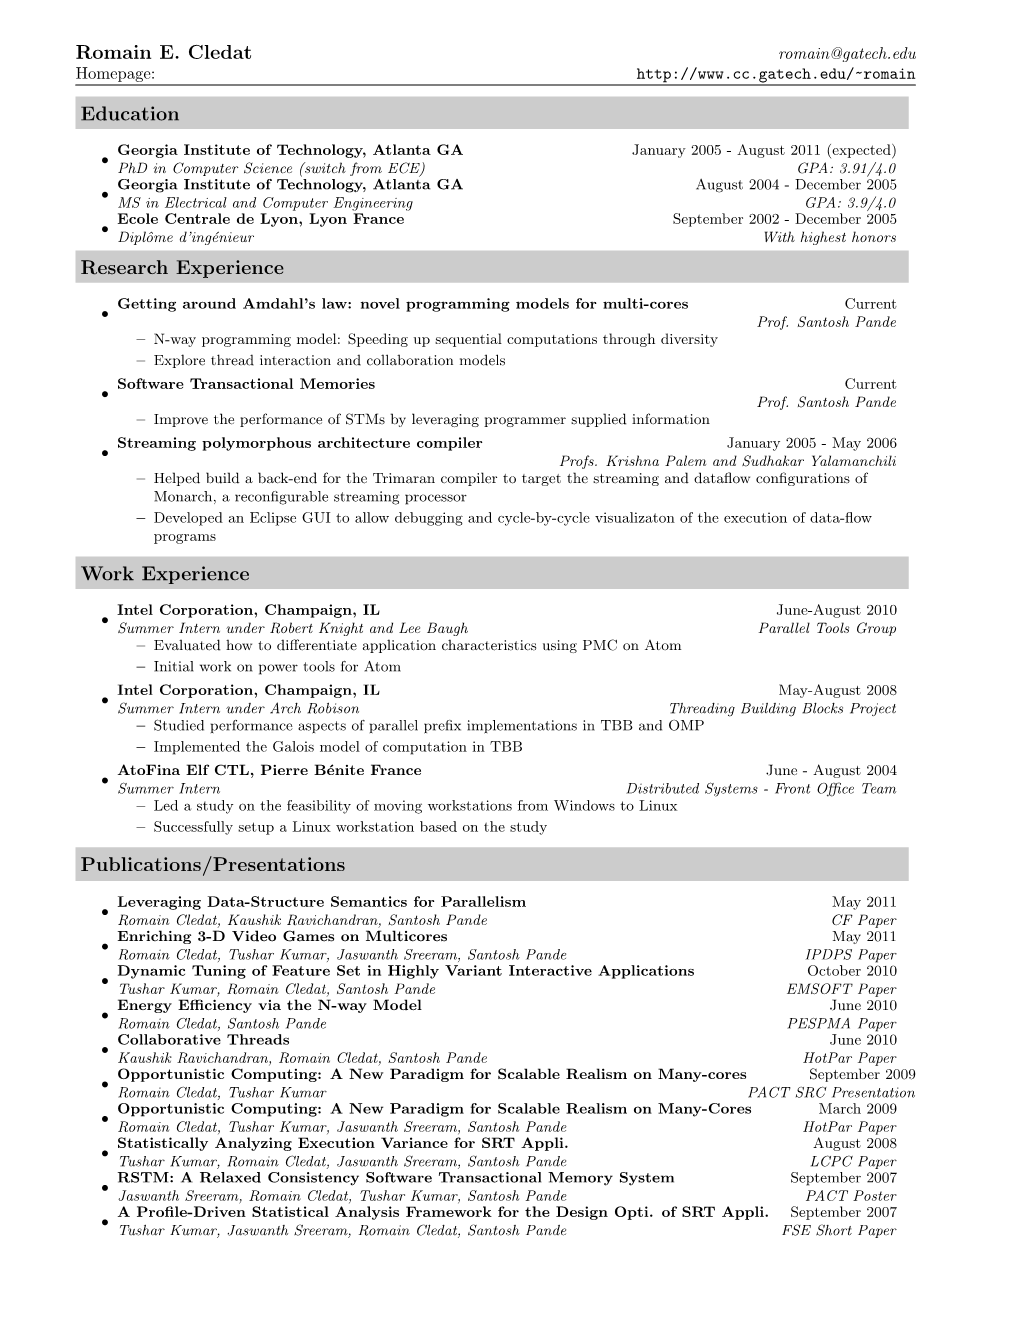 Full Resume (PDF)